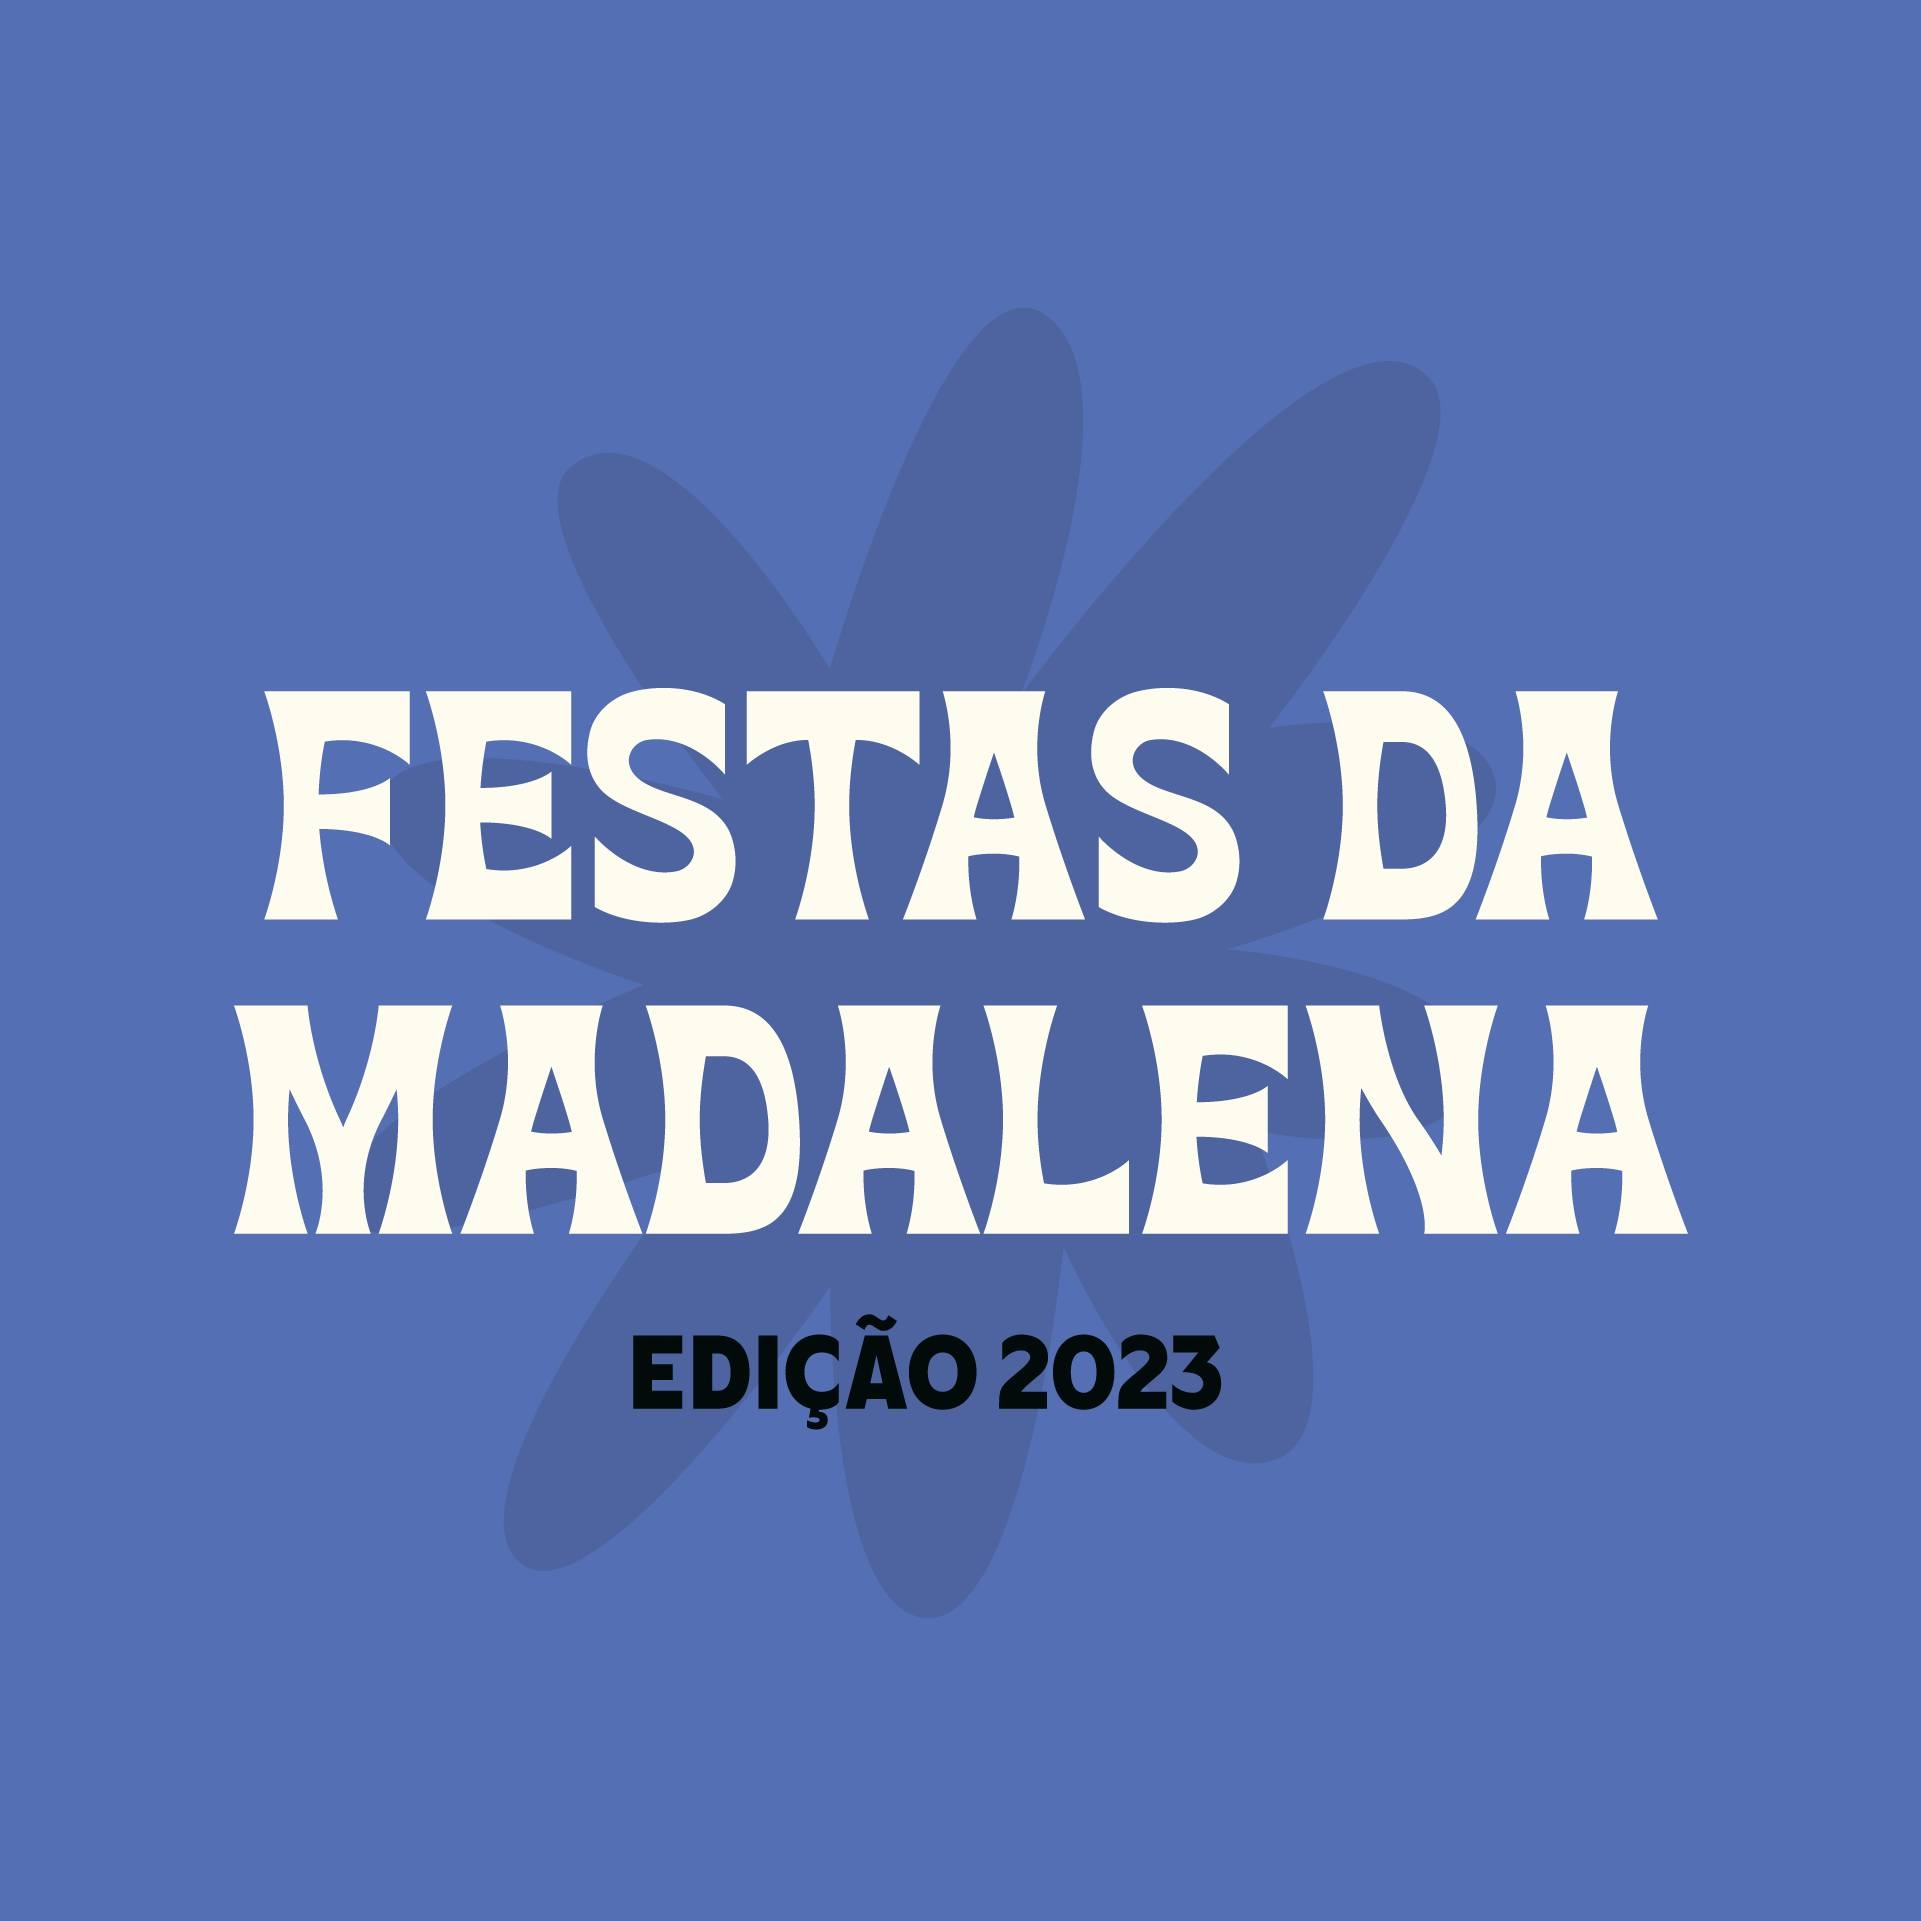 Festas da Madalena 2023